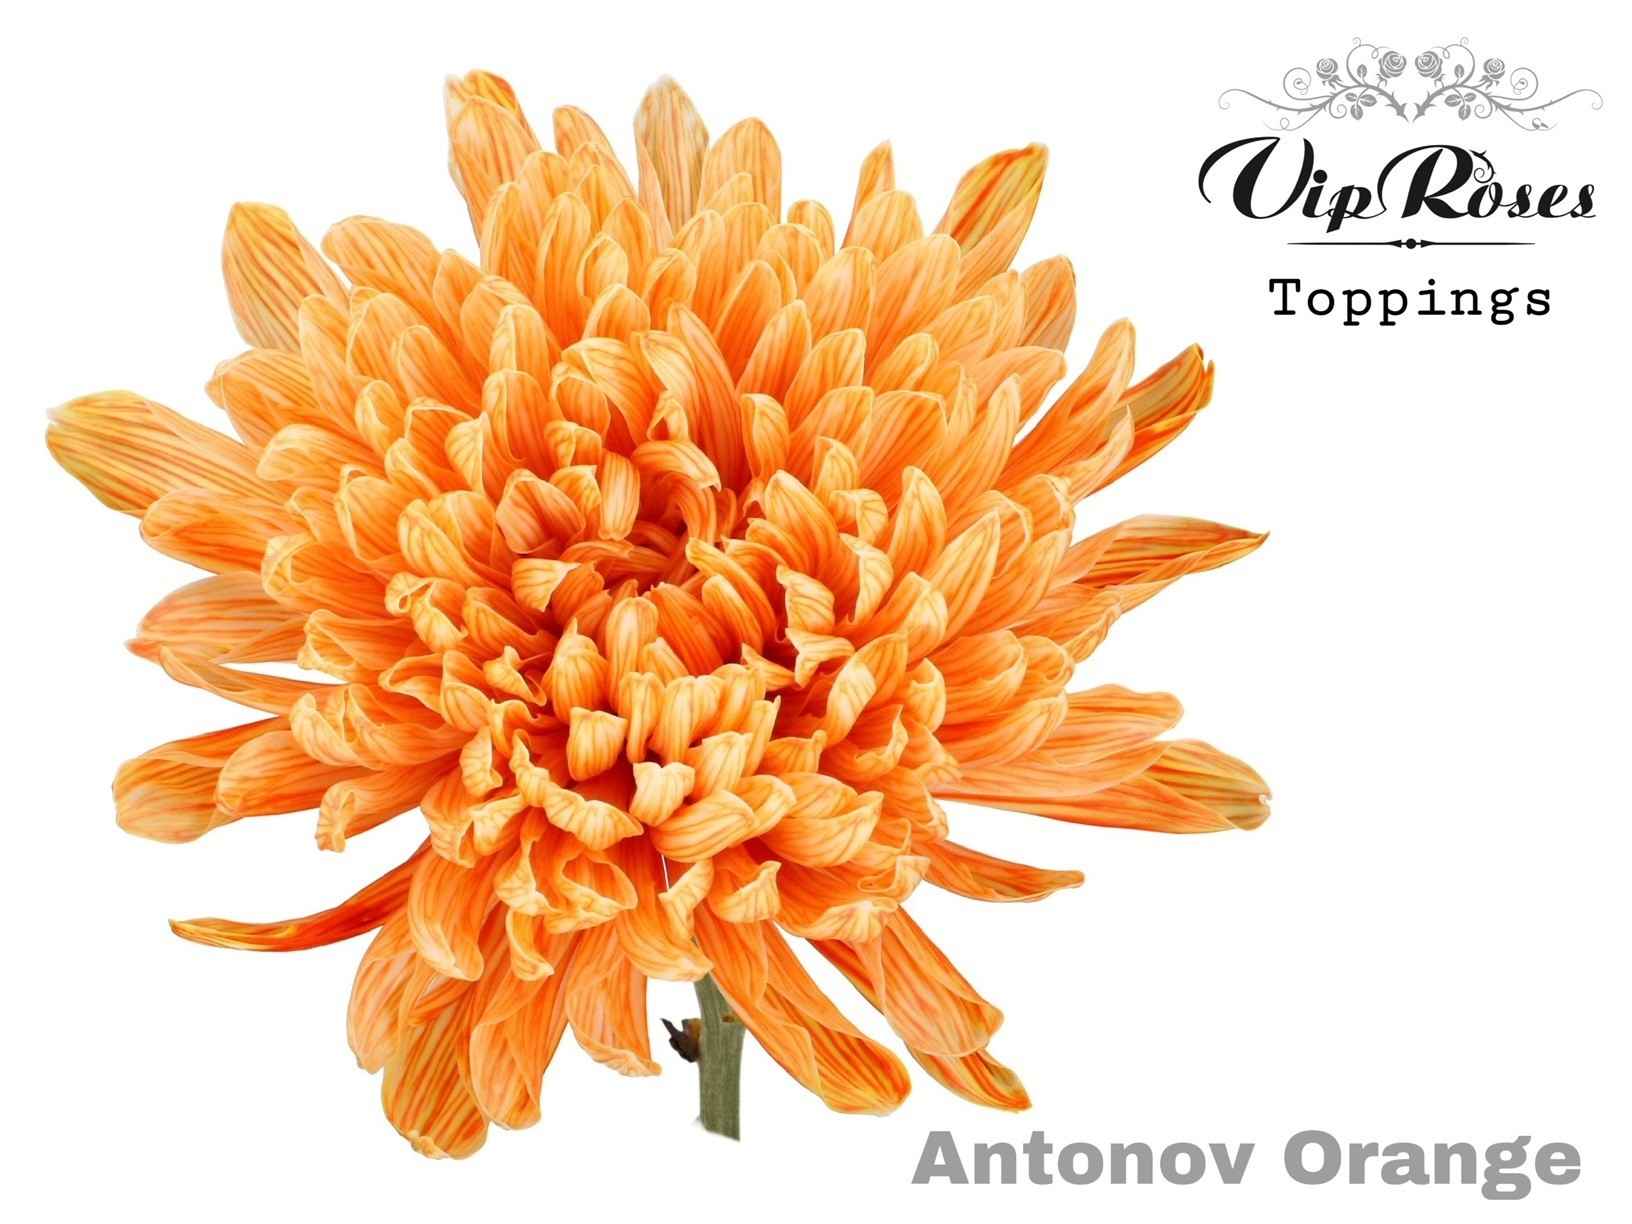 Срезанные цветы оптом Chrys bl paint antonov orange от 20шт из Голландии с доставкой по России